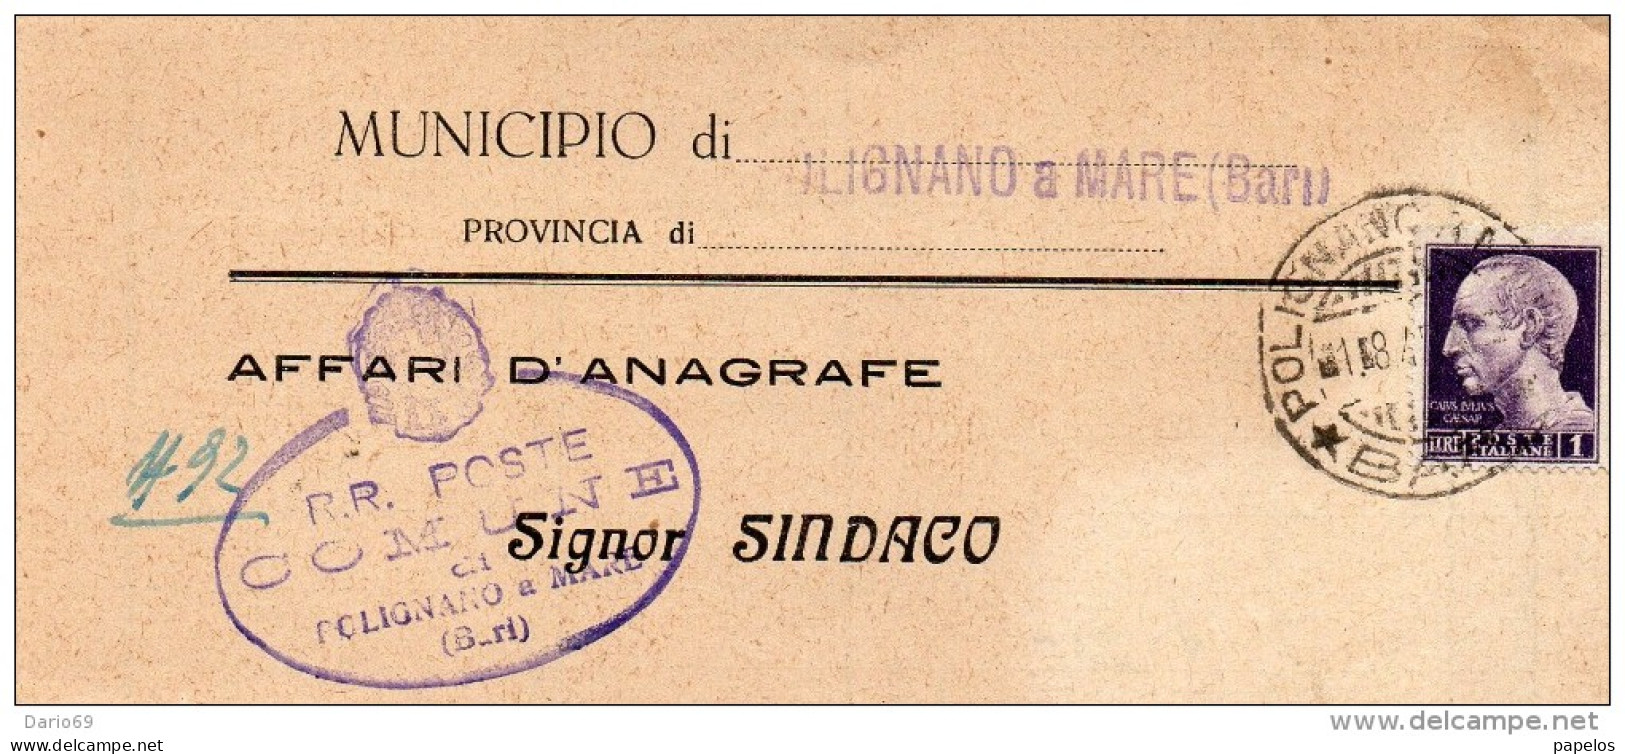 1946 LETTERA CON ANNULLO POLIGNANO A MARE BARI - Poststempel